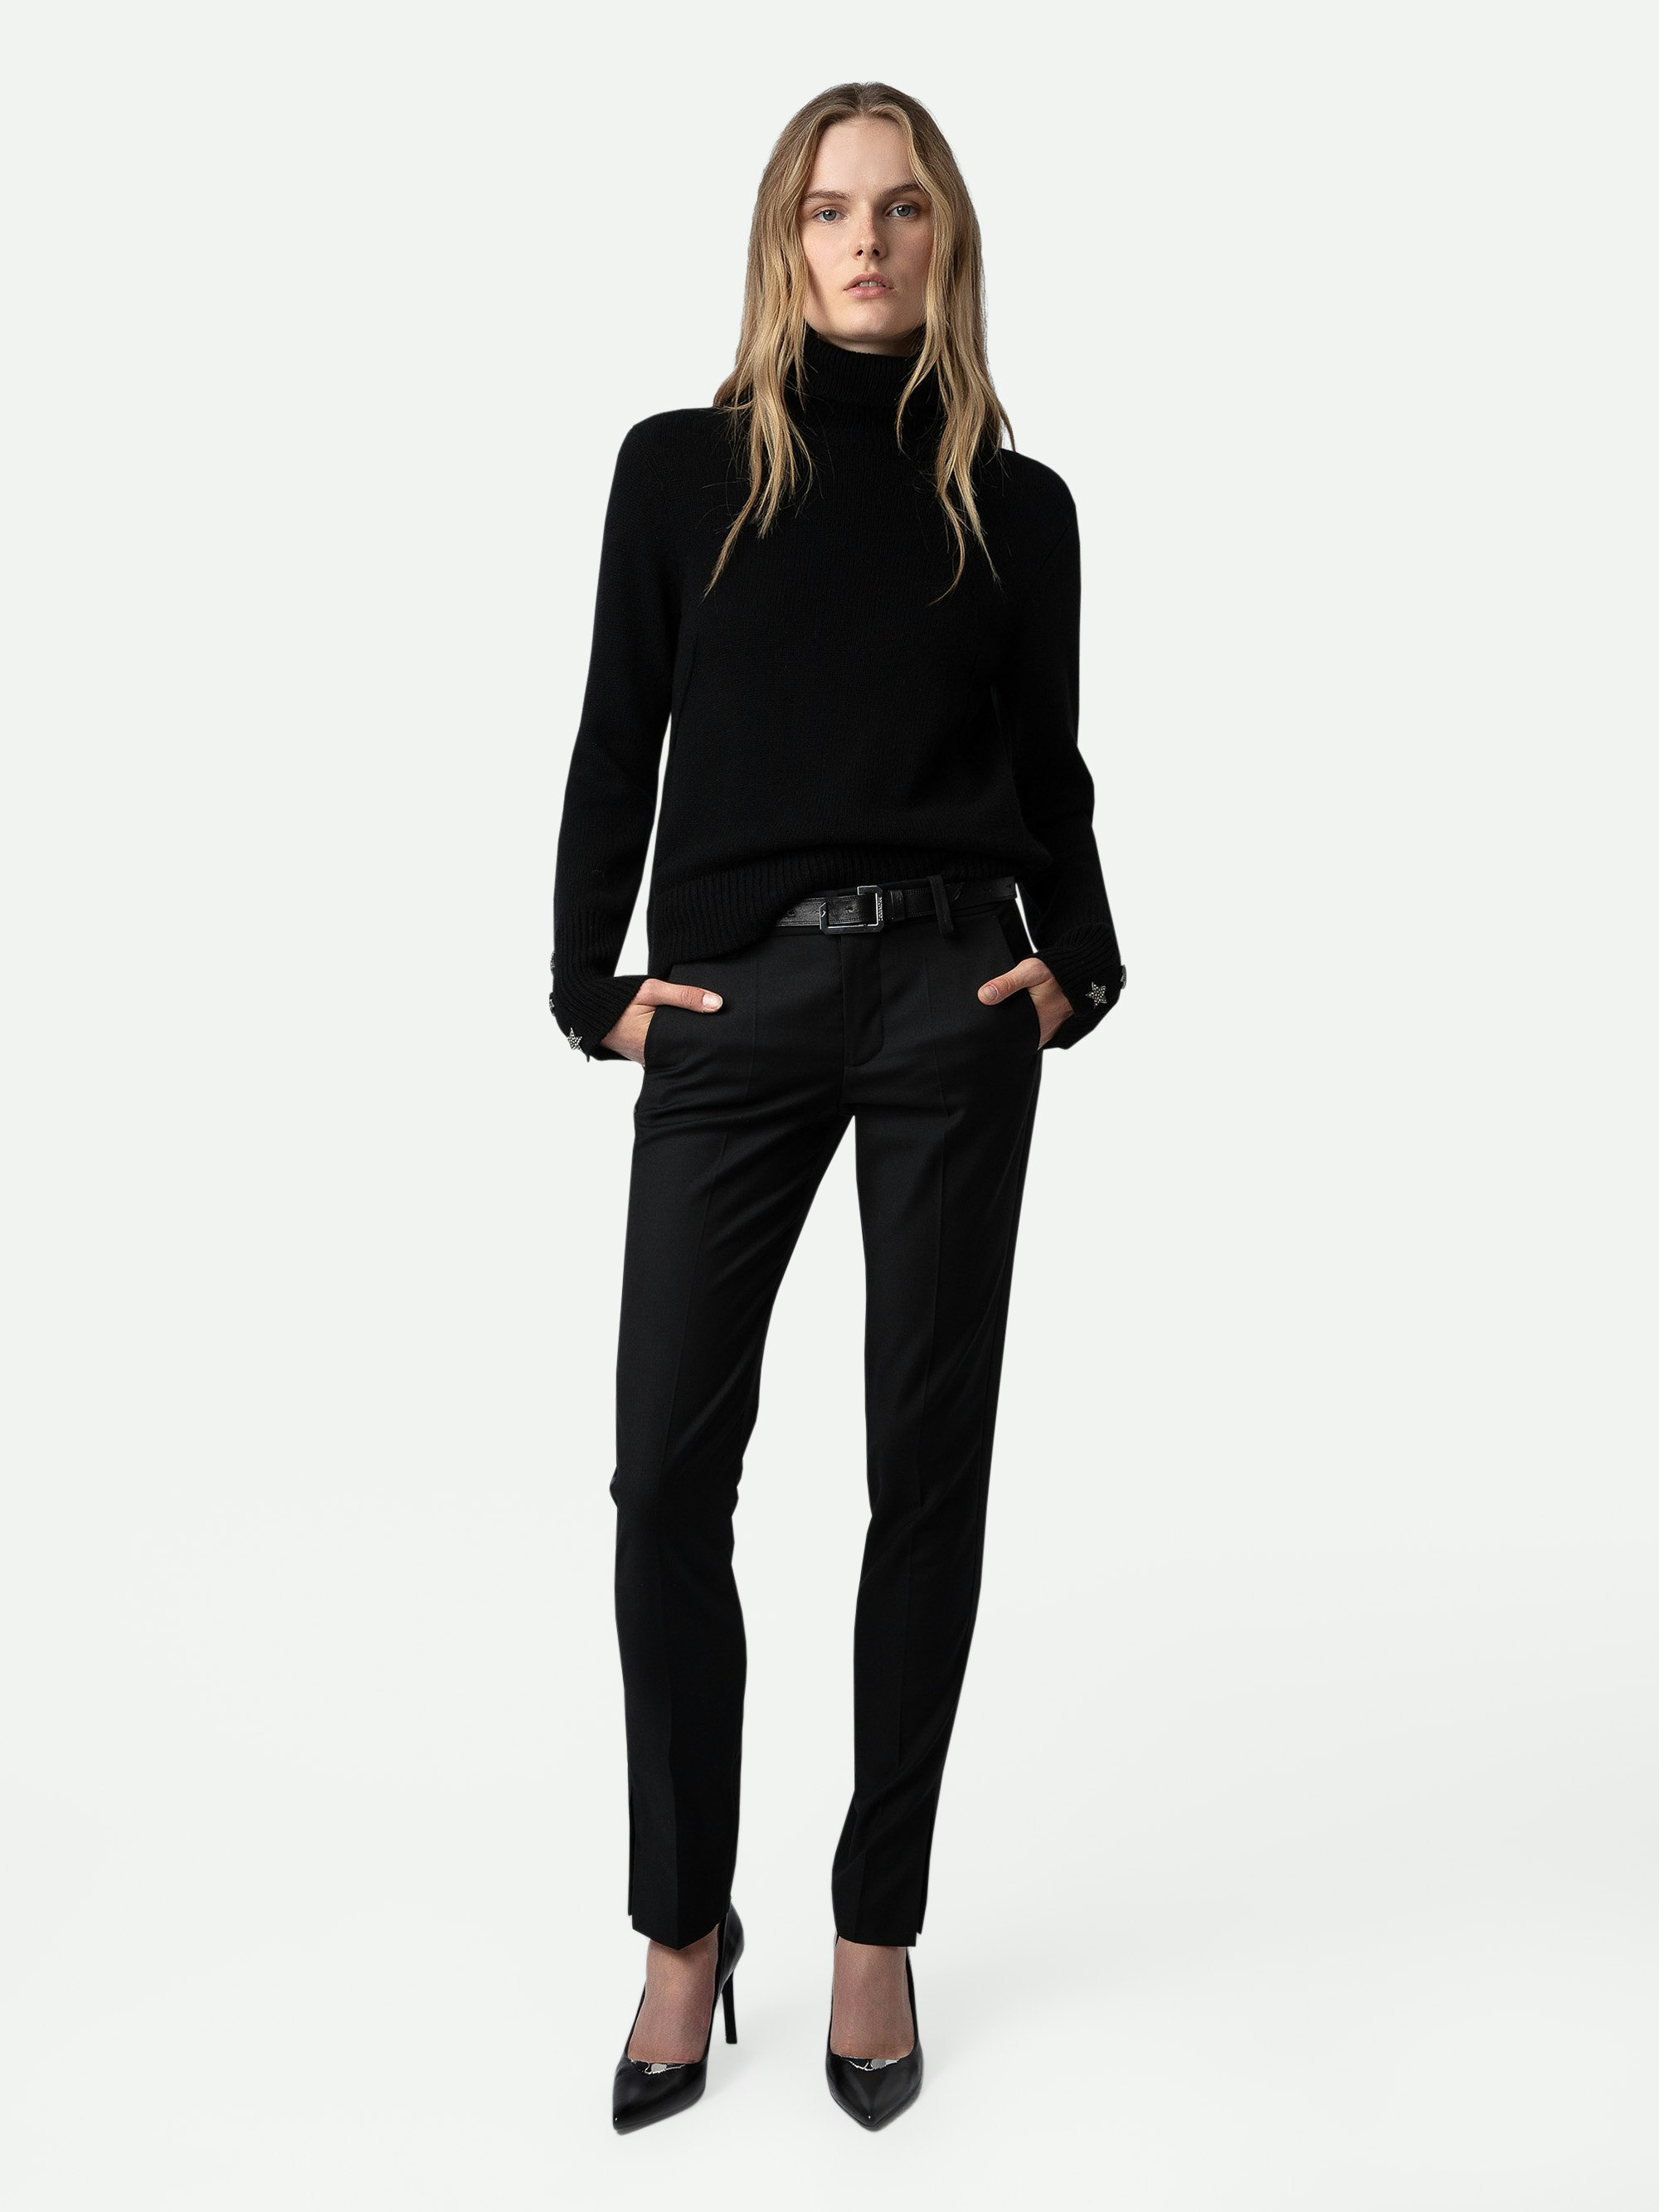 Maglione Boxy Bijoux - Maglione in maglia nera con collo alto, maniche lunghe e polsini con bottoni gioiello a stella.